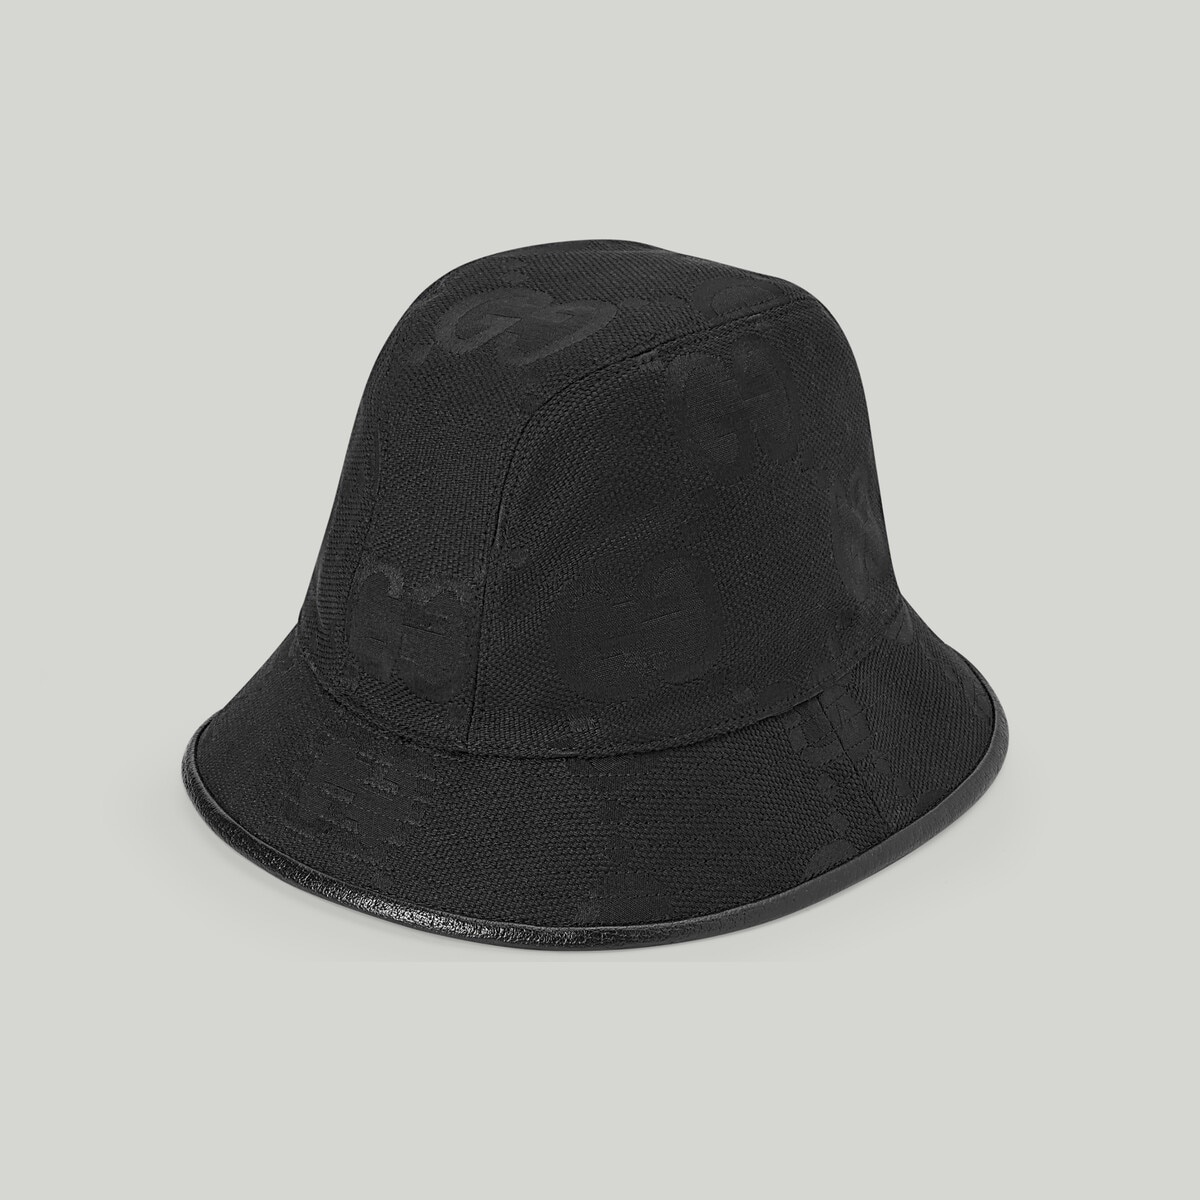 Jumbo GG bucket hat - 1